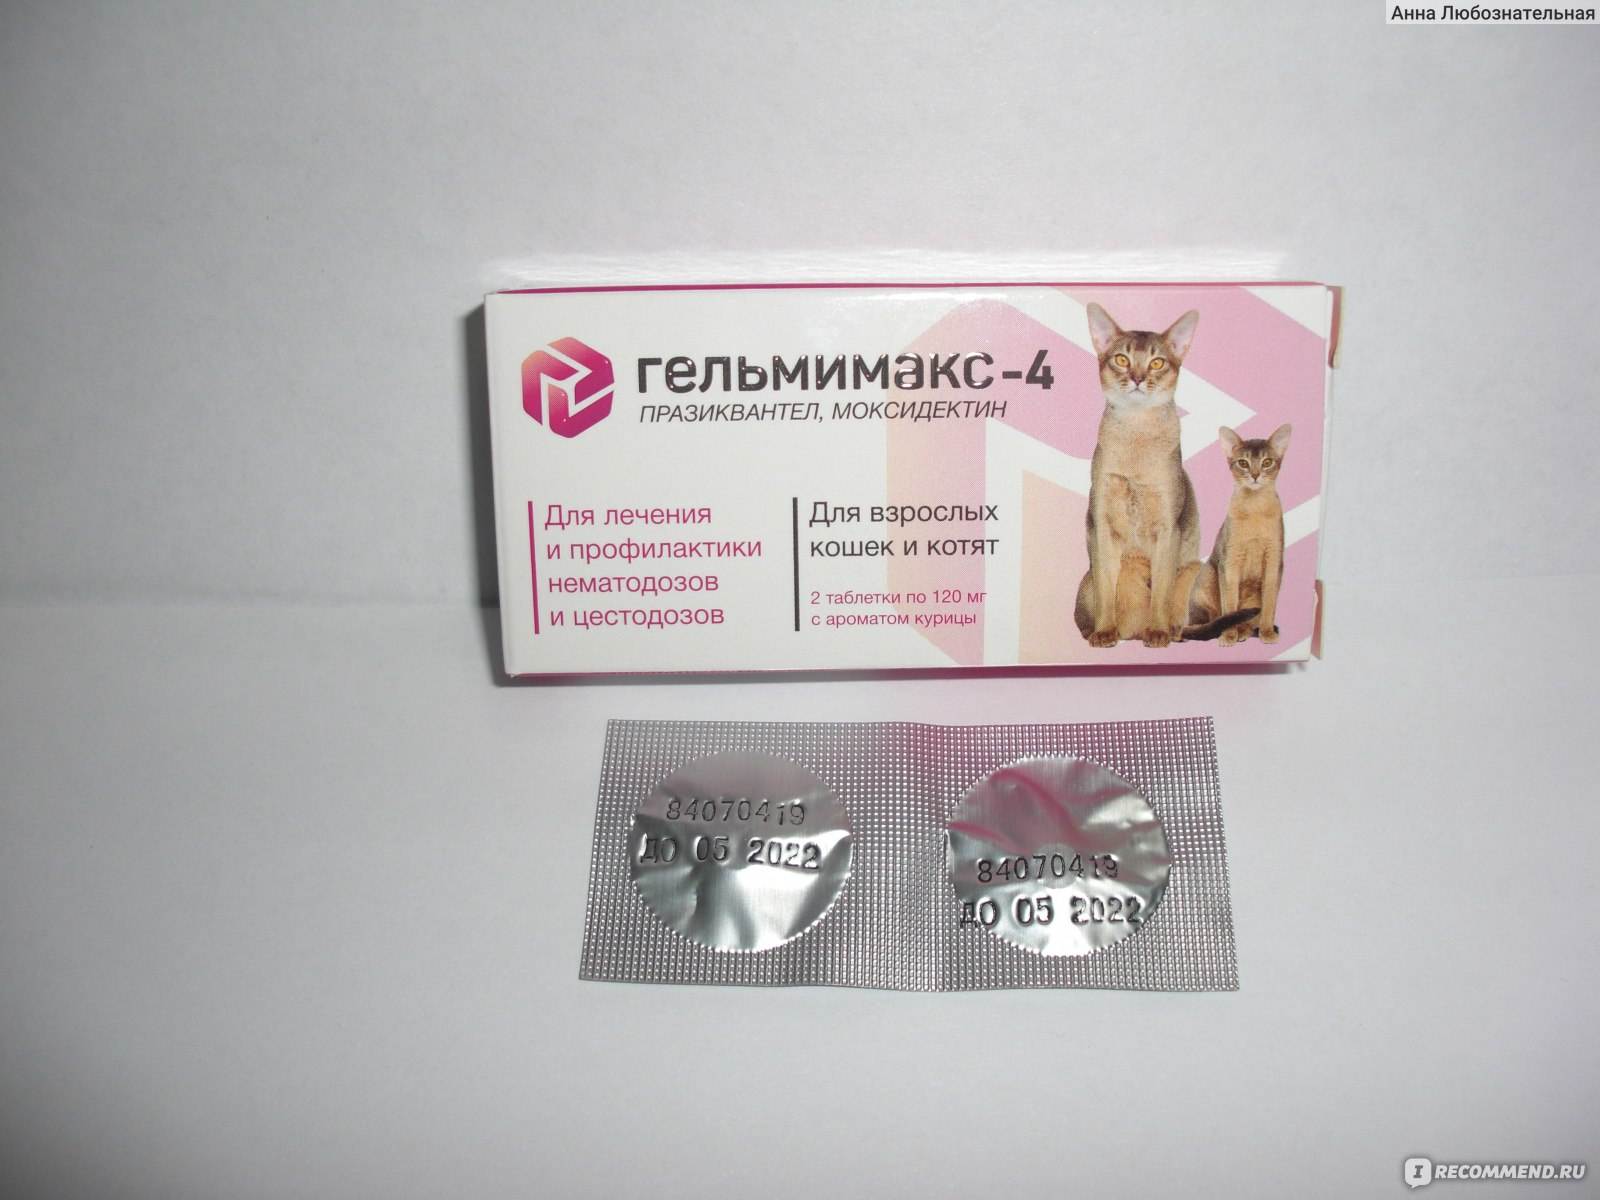 Препарат "энромаг" - инструкция для лечения кошек и животных